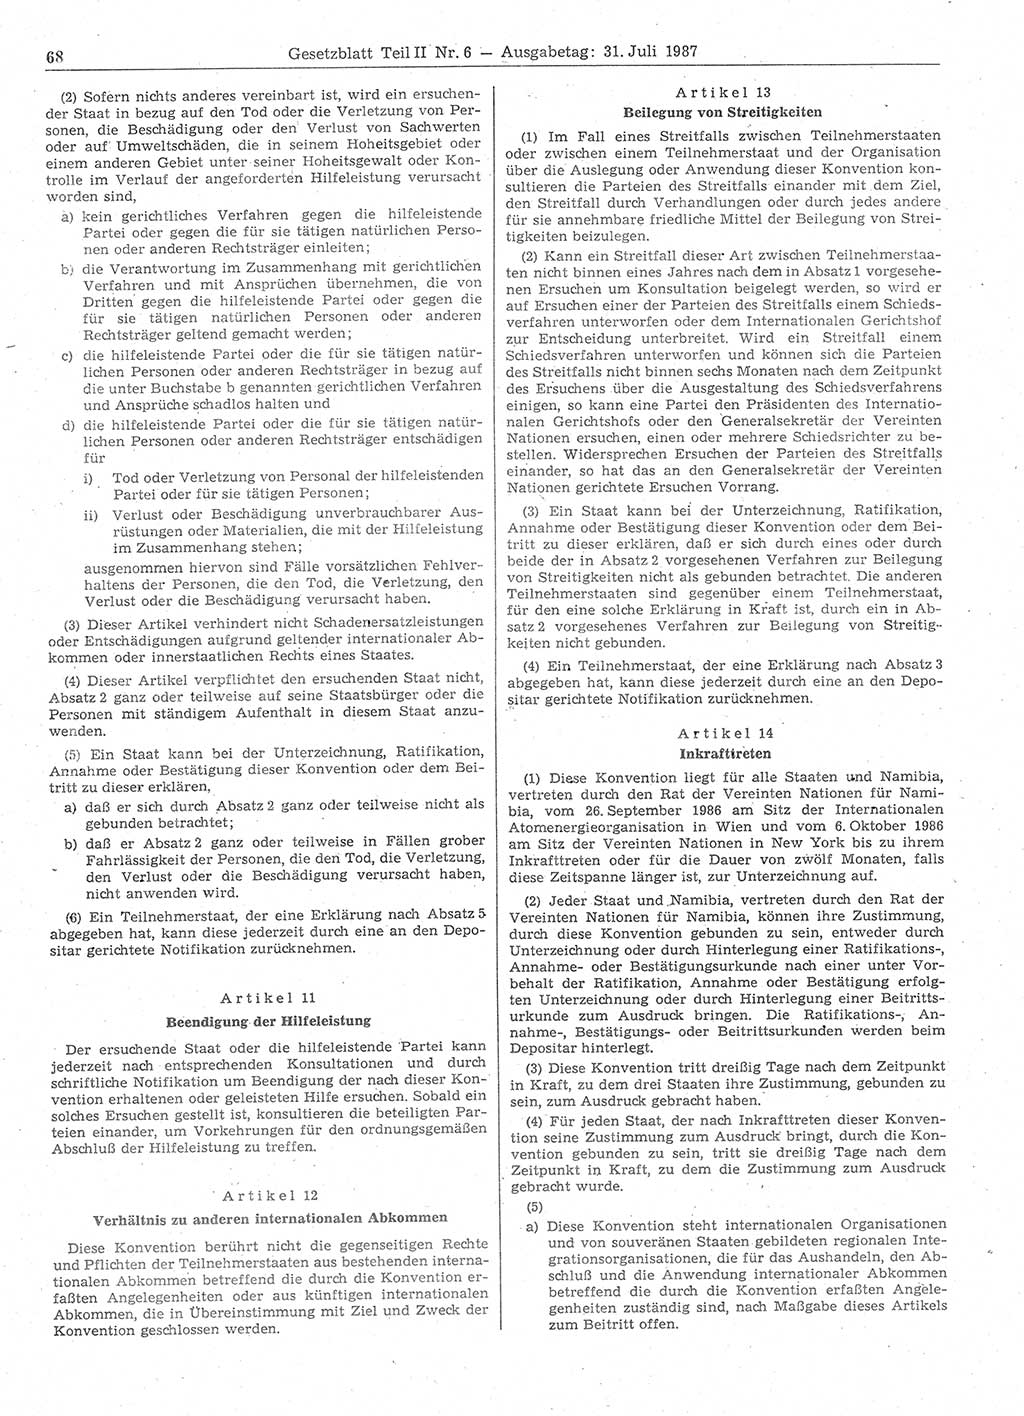 Gesetzblatt (GBl.) der Deutschen Demokratischen Republik (DDR) Teil ⅠⅠ 1987, Seite 68 (GBl. DDR ⅠⅠ 1987, S. 68)